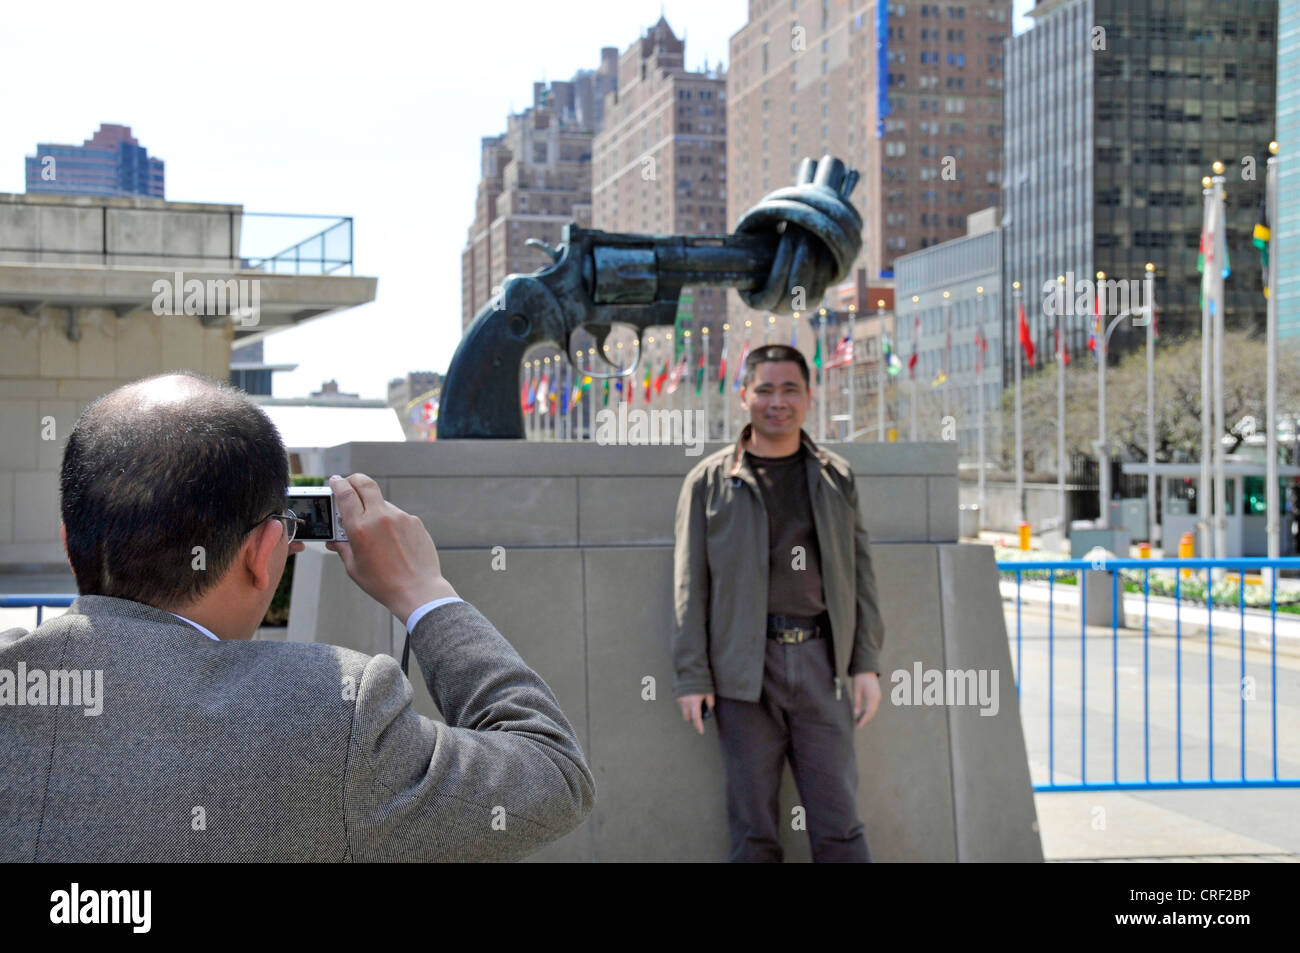 Les touristes de prendre des photos souvenirs devant le pistolet noué, la non-violence la sculpture de Reuterswaerd devant le siège de l'ONU, USA, USA, New York, Manhattan Banque D'Images